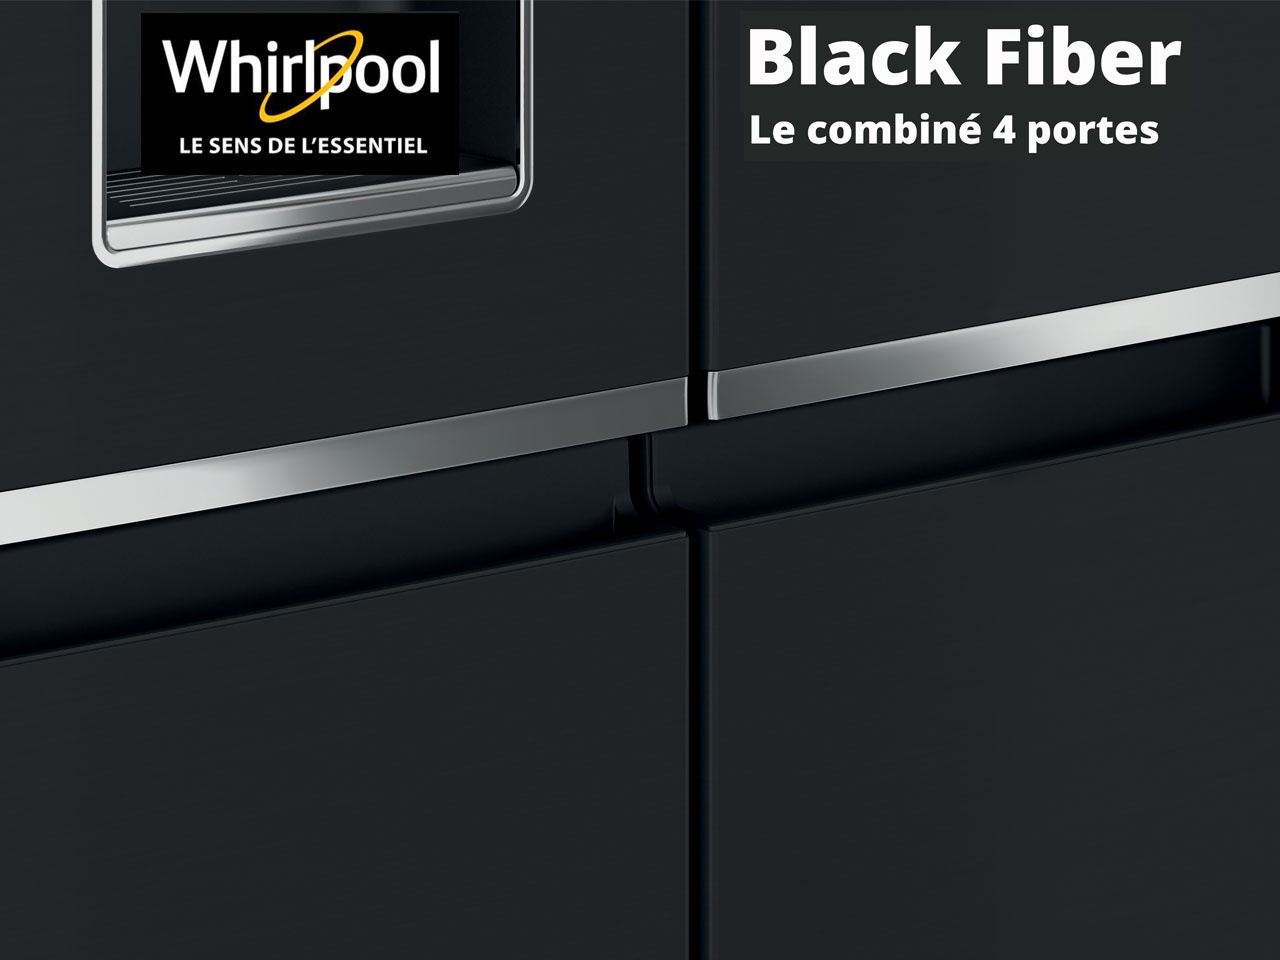 Whirlpool signe avec Black Fiber, un combiné 4 portes au design premium en noir inox mat